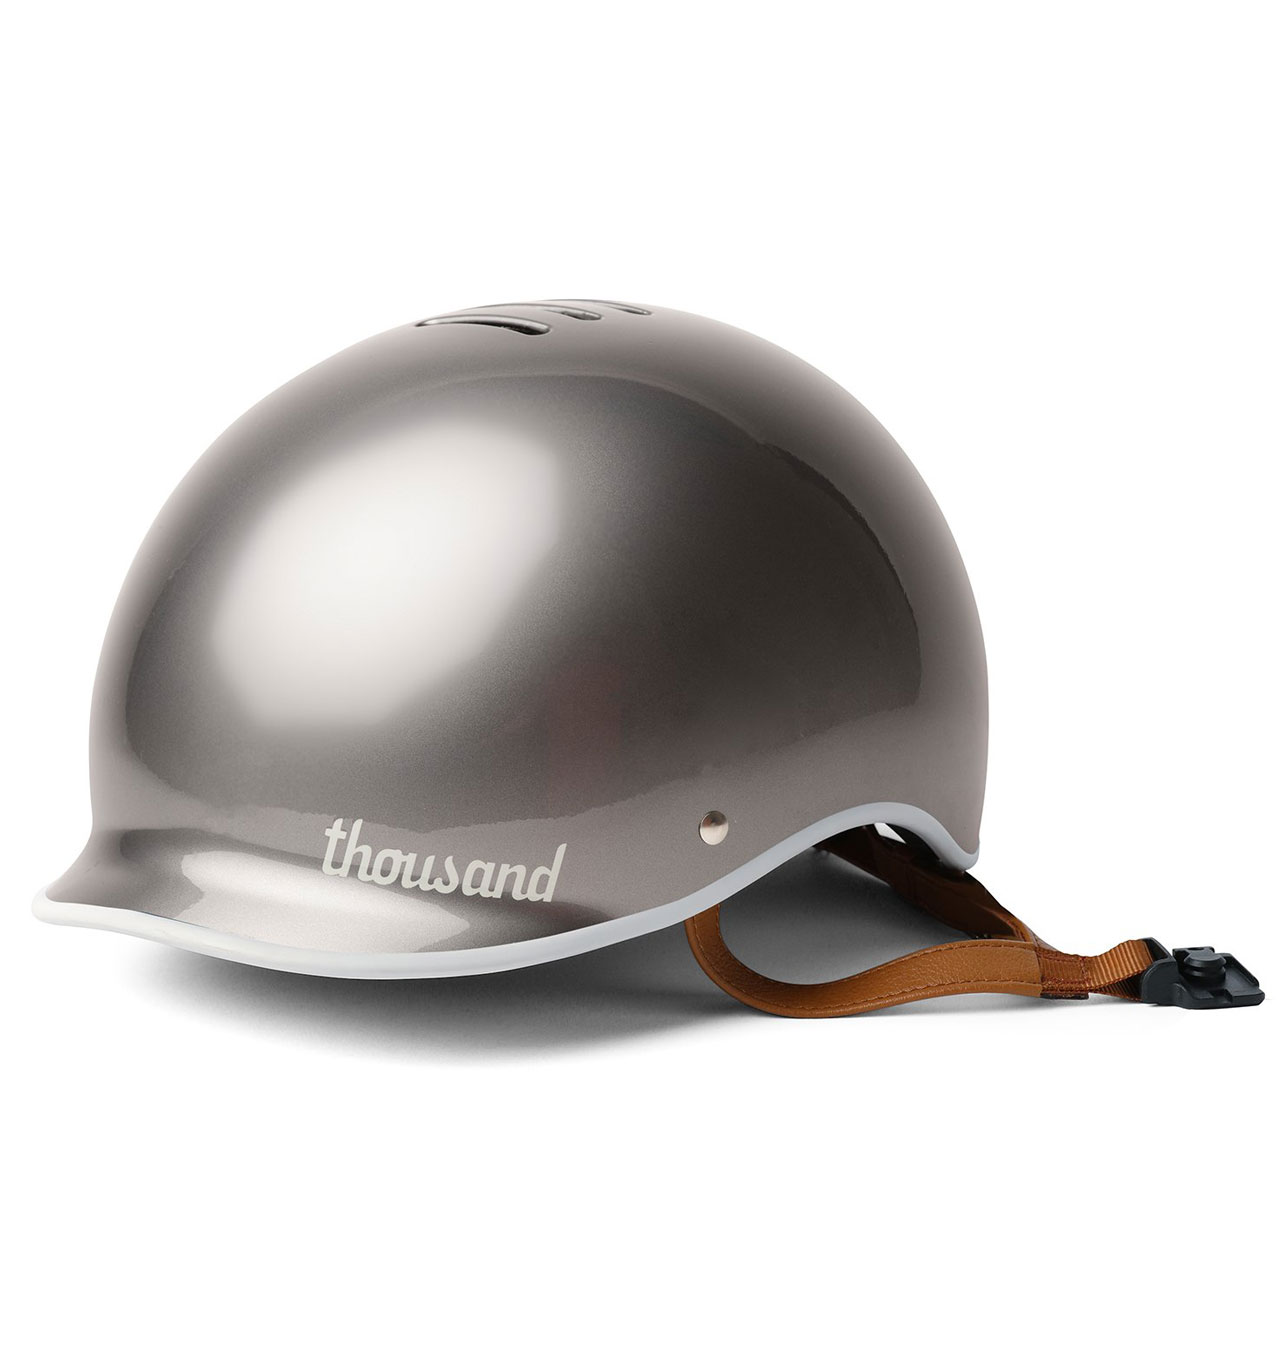 Thousand---Heritage-Bike-Helmet---Polished-Titanium-12332